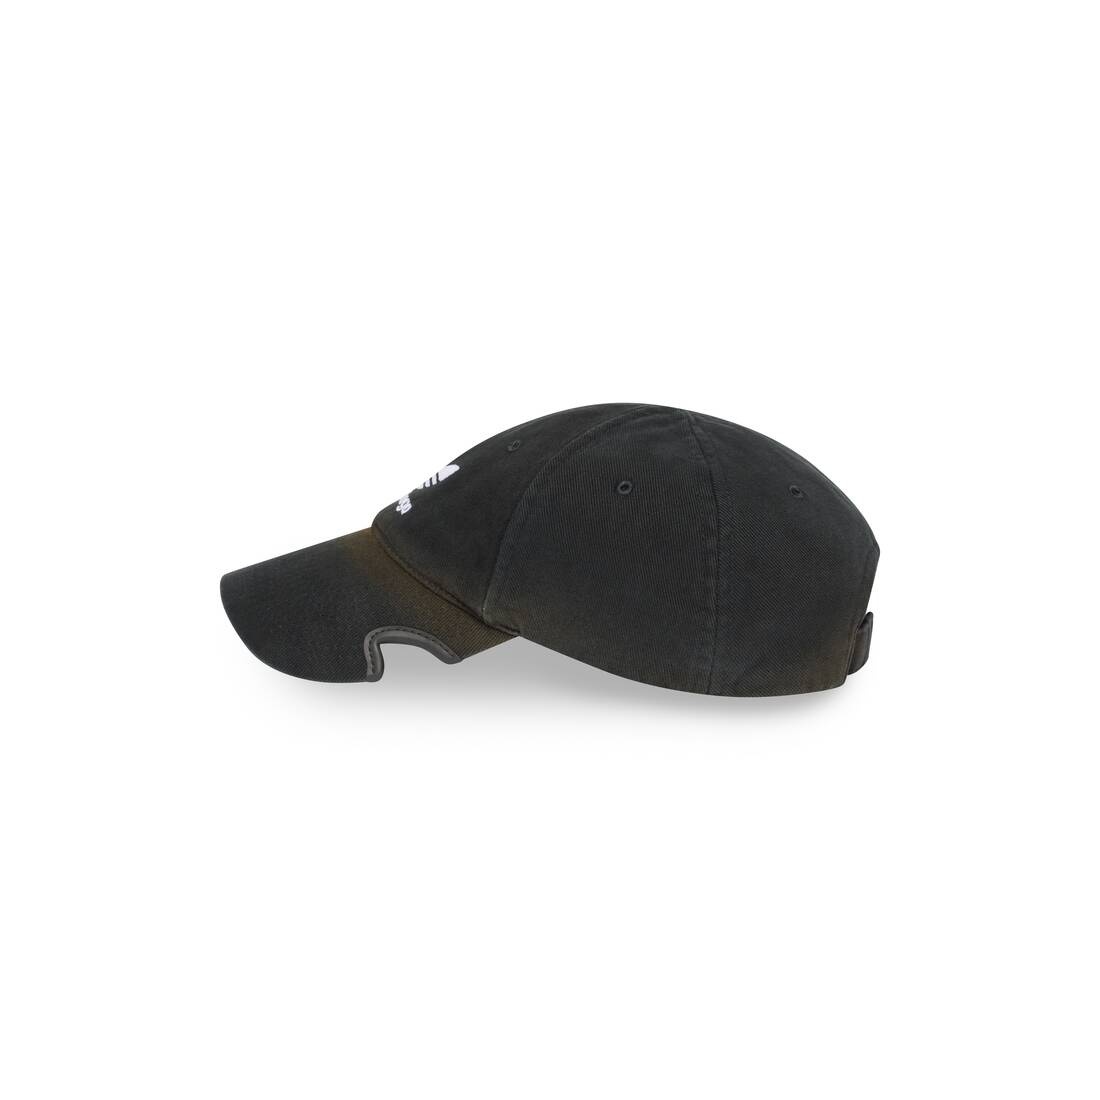 Balenciaga / Adidas Cap in Black - 4